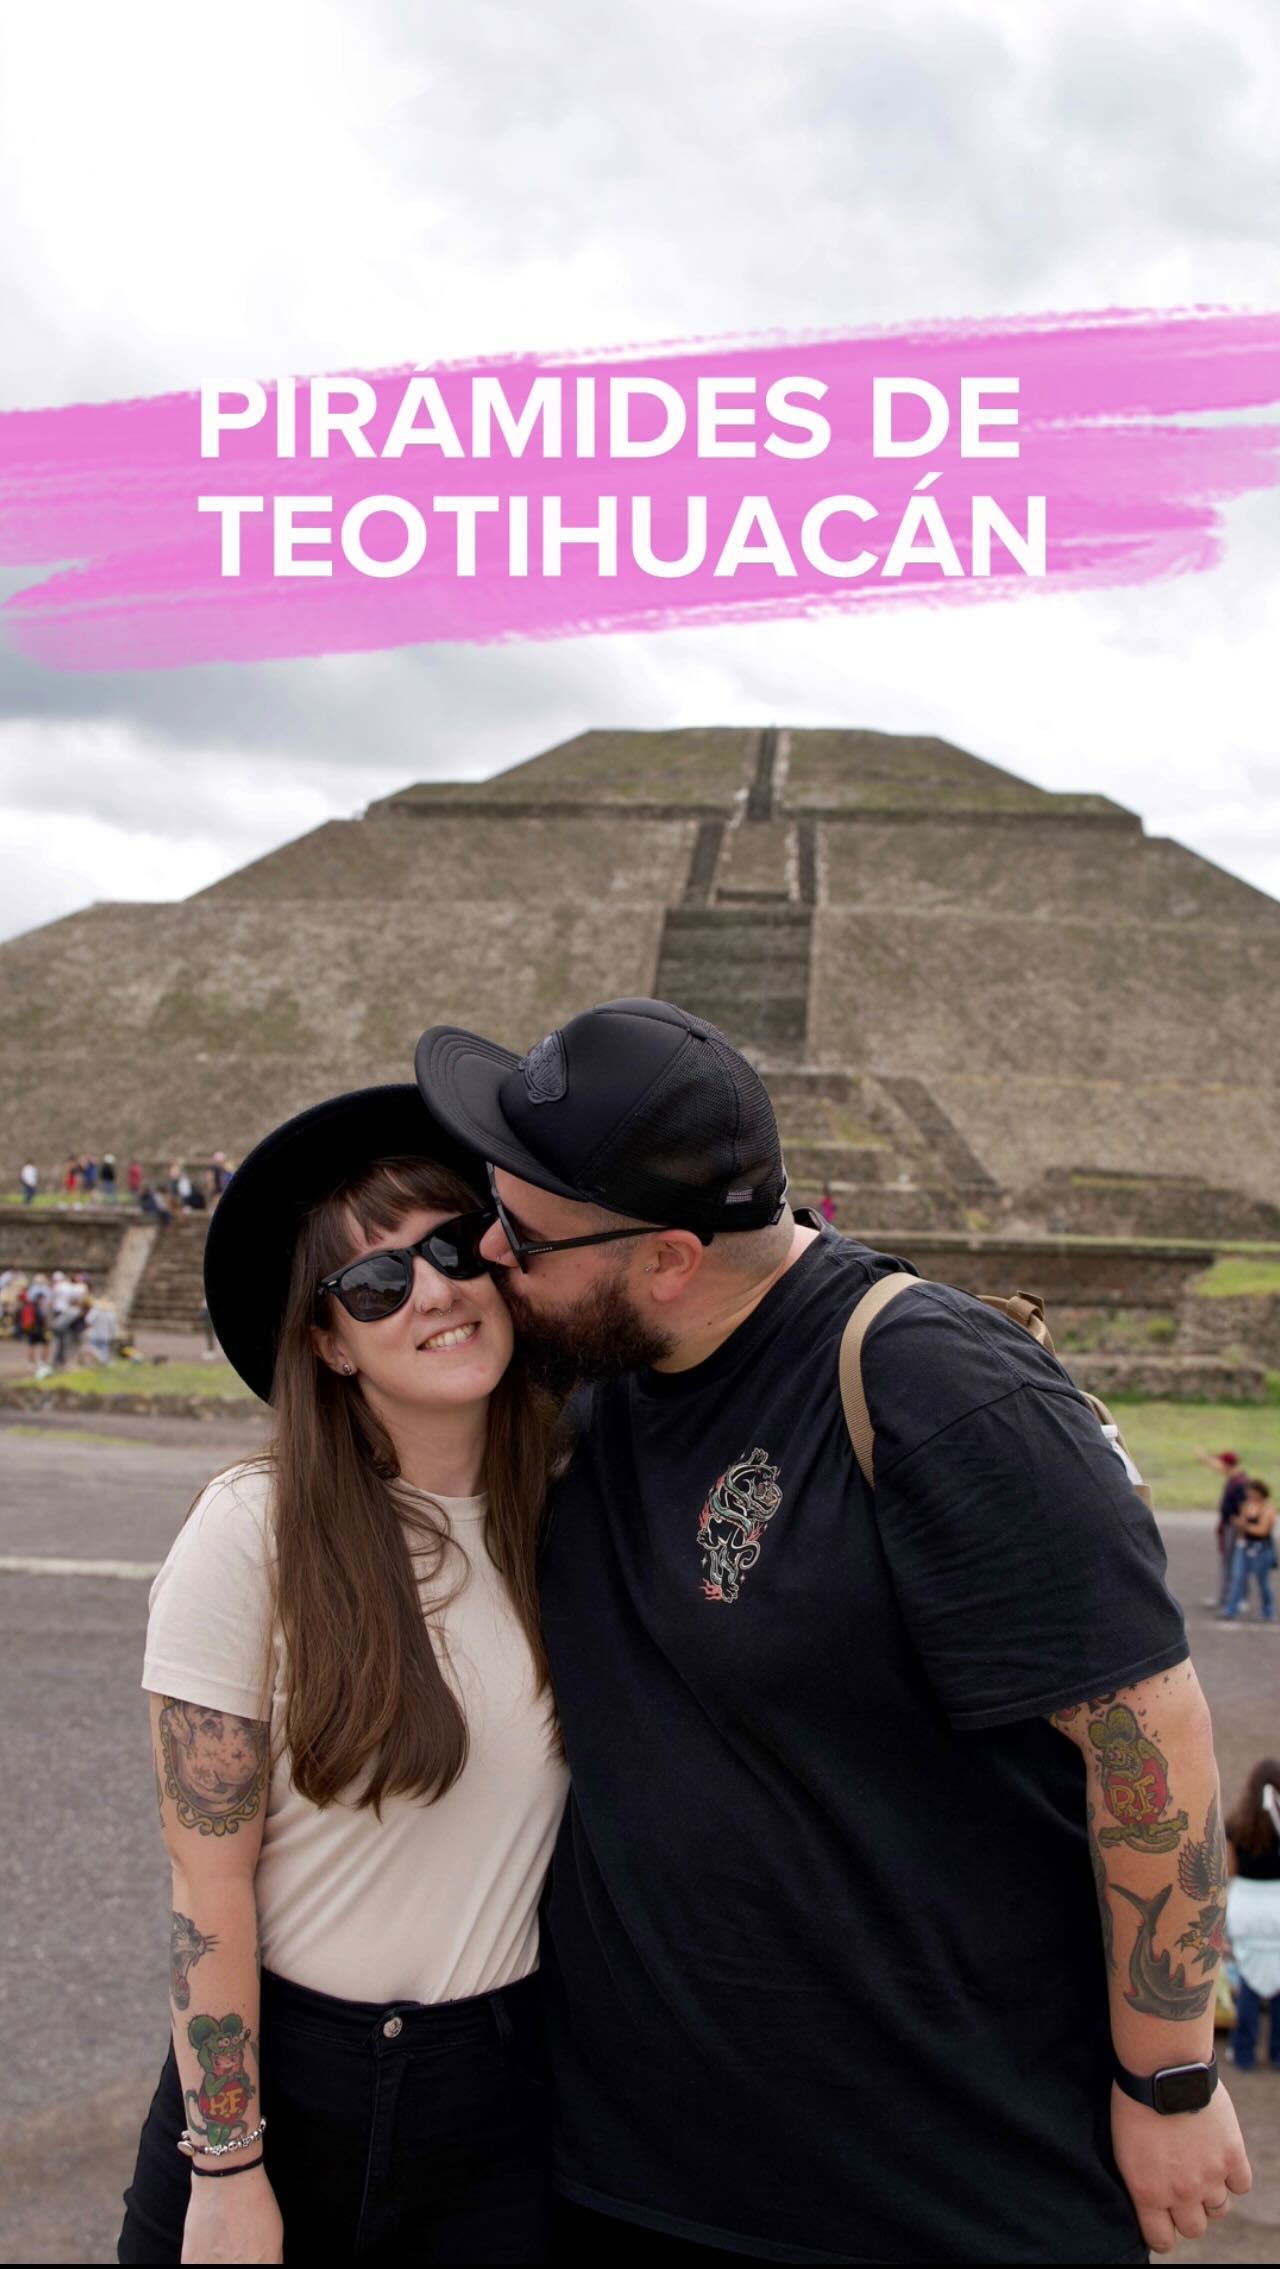 ✨Pirámides de Teotihuacán con @getyourguide ✨
.
A tan sólo 50 kilómetros de Ciudad de Mexico se encuentra la impresionante ciudad antigua de Teotihuacán (“Lugar donde los dioses fueron creados”).
.
Aquí puedes visitar la pirámide de la Luna y la del Sol, el Templo de Quetzalcóatl o pasear por la Calzada de los Muertos💀
.
Si quieres que la visita sea cómoda y aprender mucho sobre este lugar, te recomedamos la excursión desde Ciudad de Mexico con entrada anticipada a Teotihuacán de @getyourguide . Disfrutarás de este lugar antes de que lleguen las masificaciones y contarás con las explicaciones de un arqueólogo. 
.
Sin duda, un imprescindible en tu viaje a Ciudad de Mexico🇲🇽
.
@getyourguidecommunity #getyourguide #mexico #teotihucacan #globetrotter #viajesglobetrotter #piramides #reel #reelsinstagram #reelsofinstagram